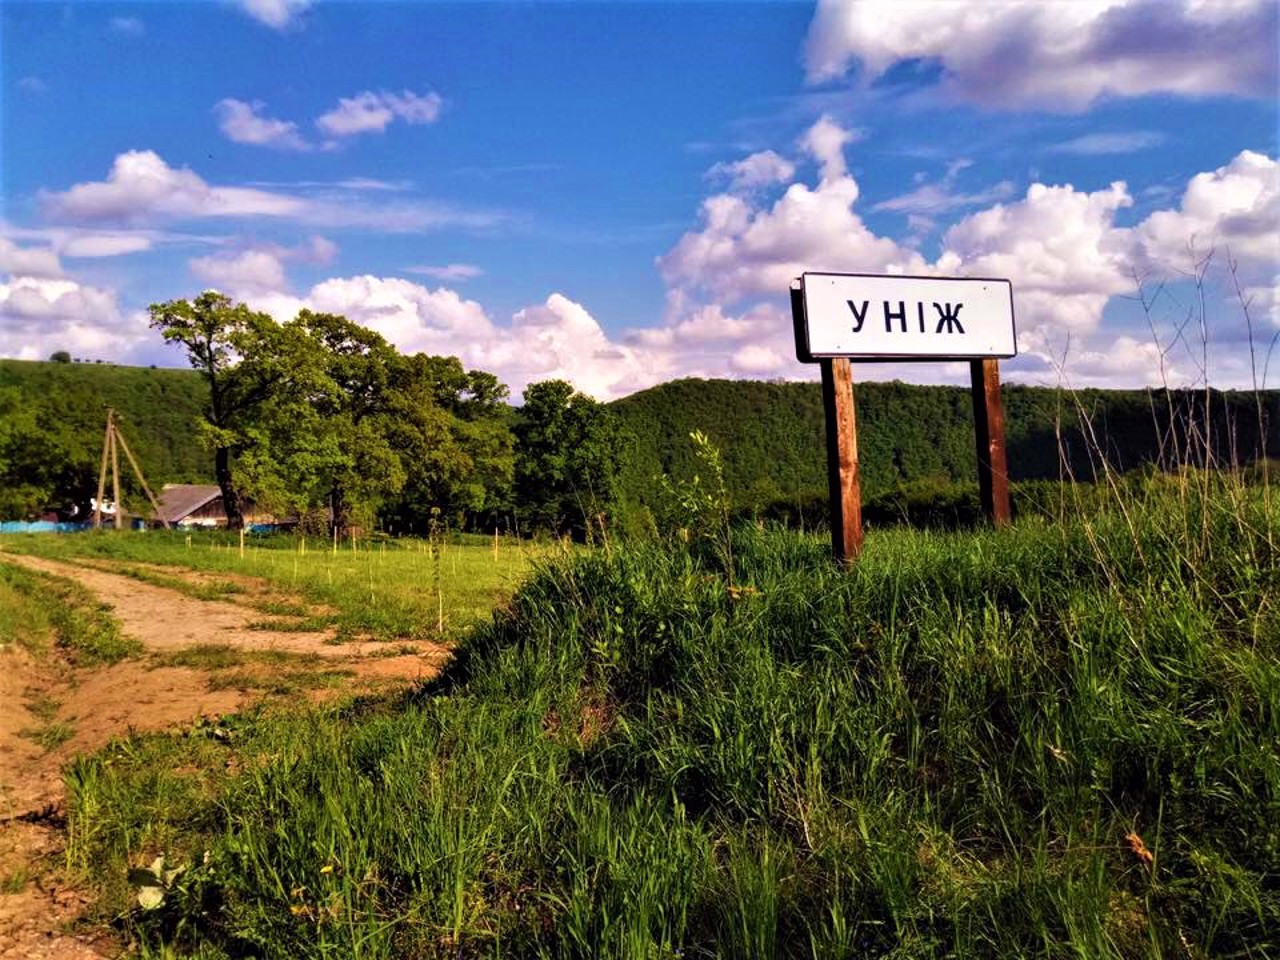 Село Униж